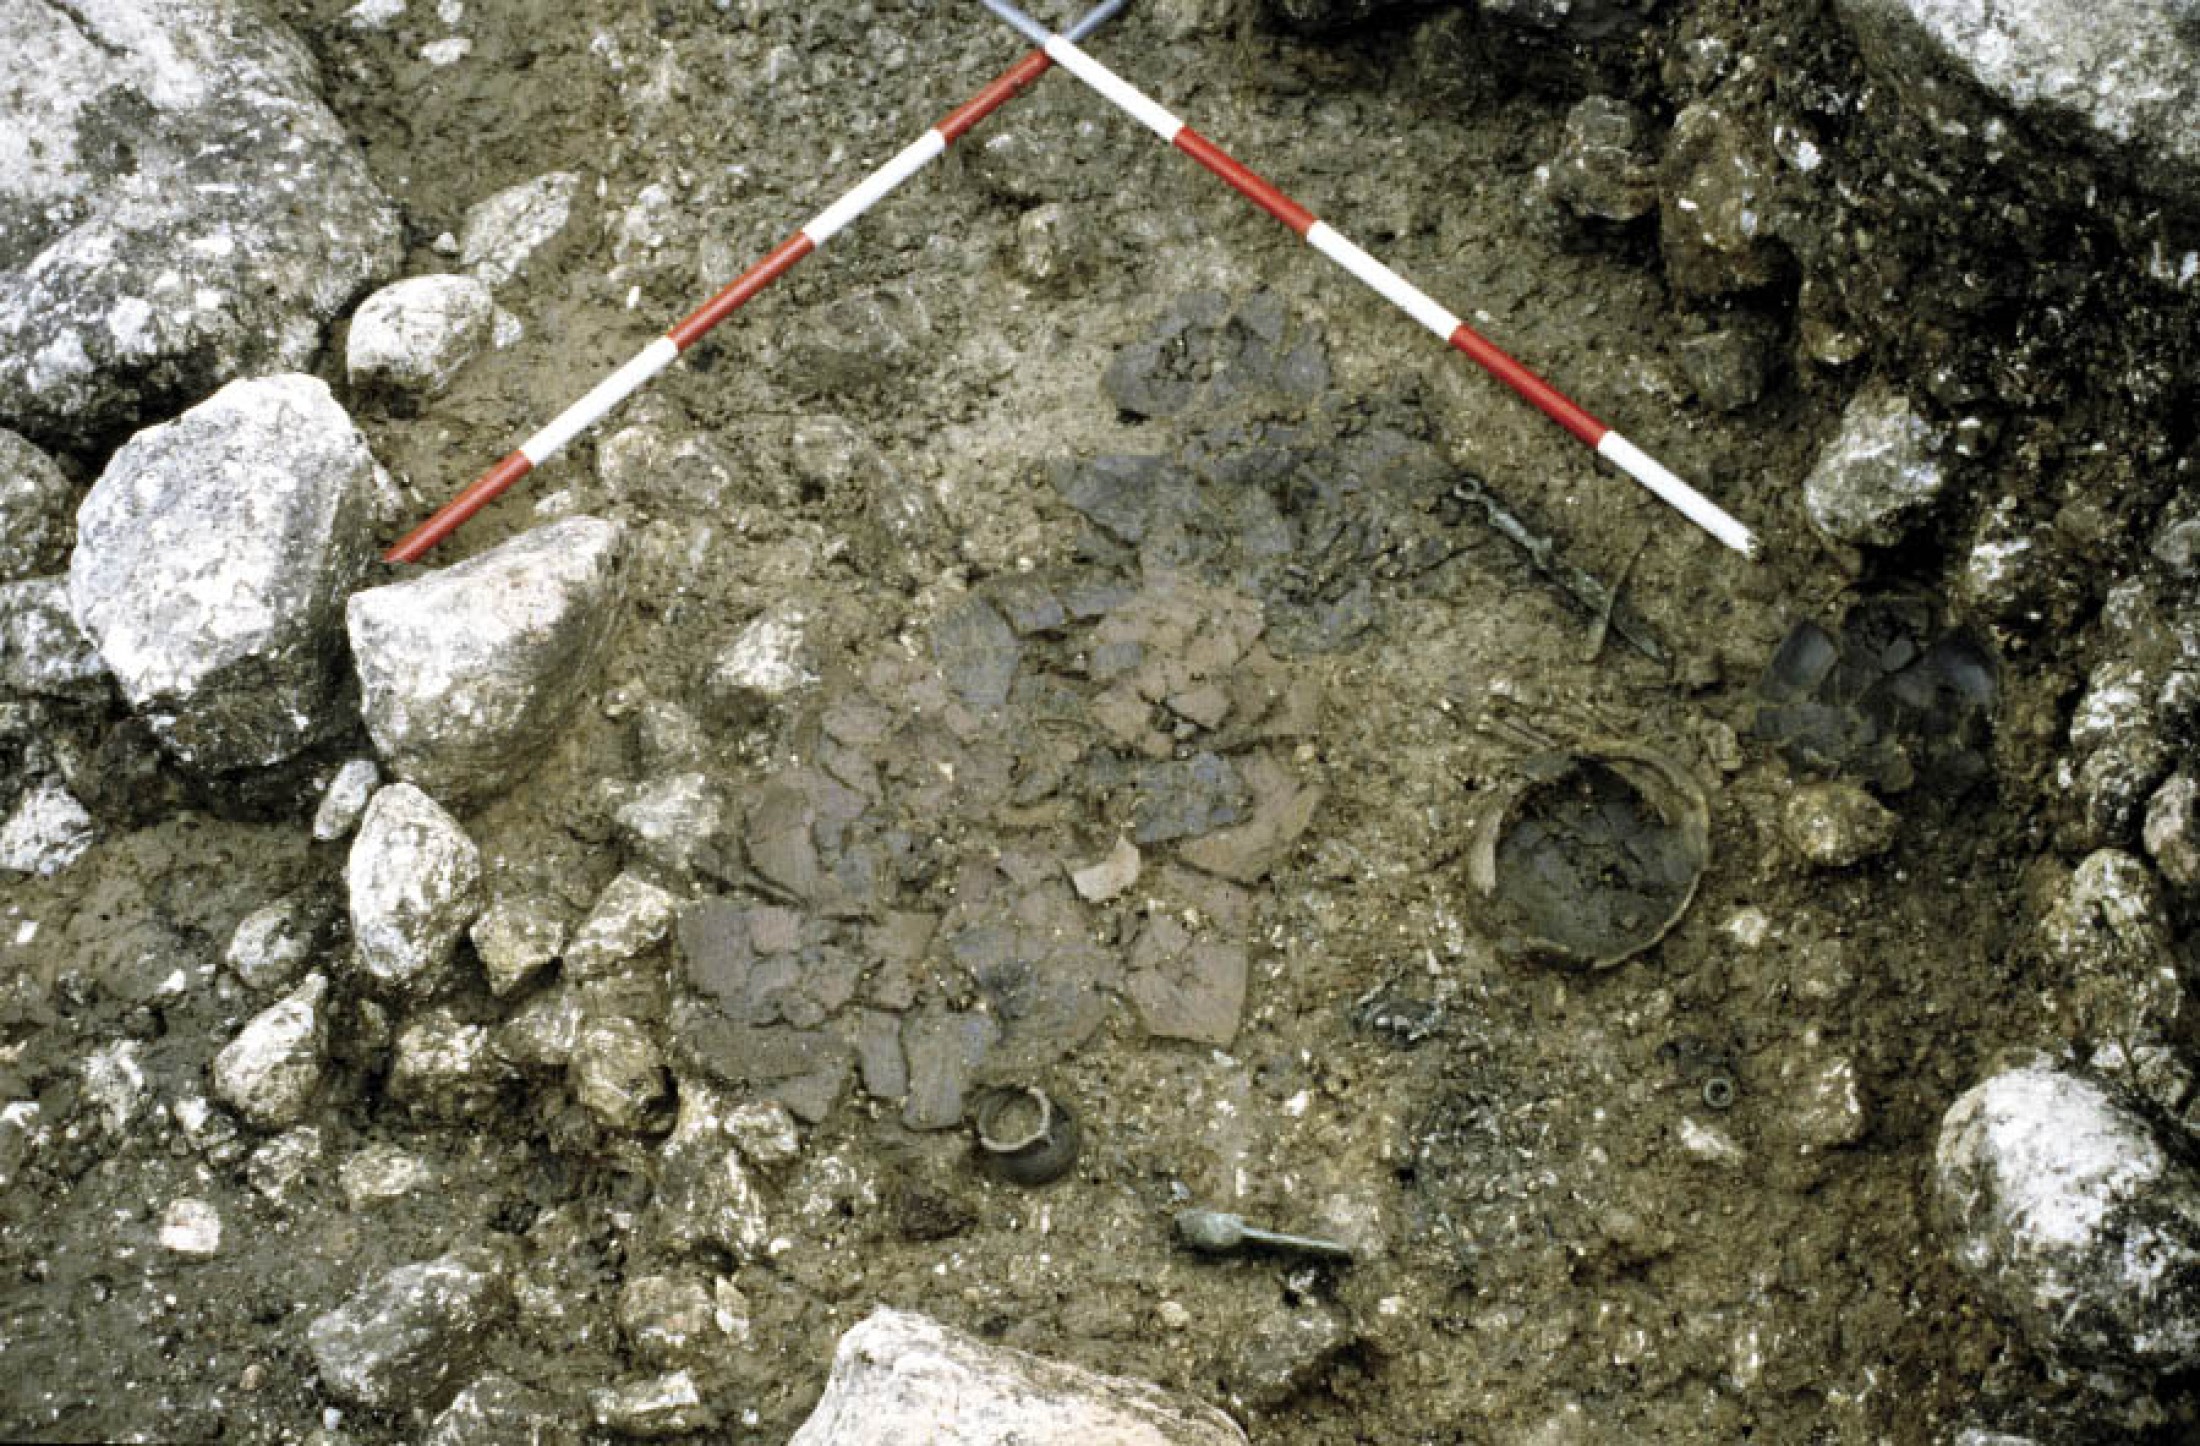 : Sehr frühes, ungestörtes Brandgrab der Hallstattkultur, um 800 v. Chr. Bei den Metallobjekten ist der spätbronzezeitliche Charakter noch erkennbar. (Foto: PA NHM Wien)